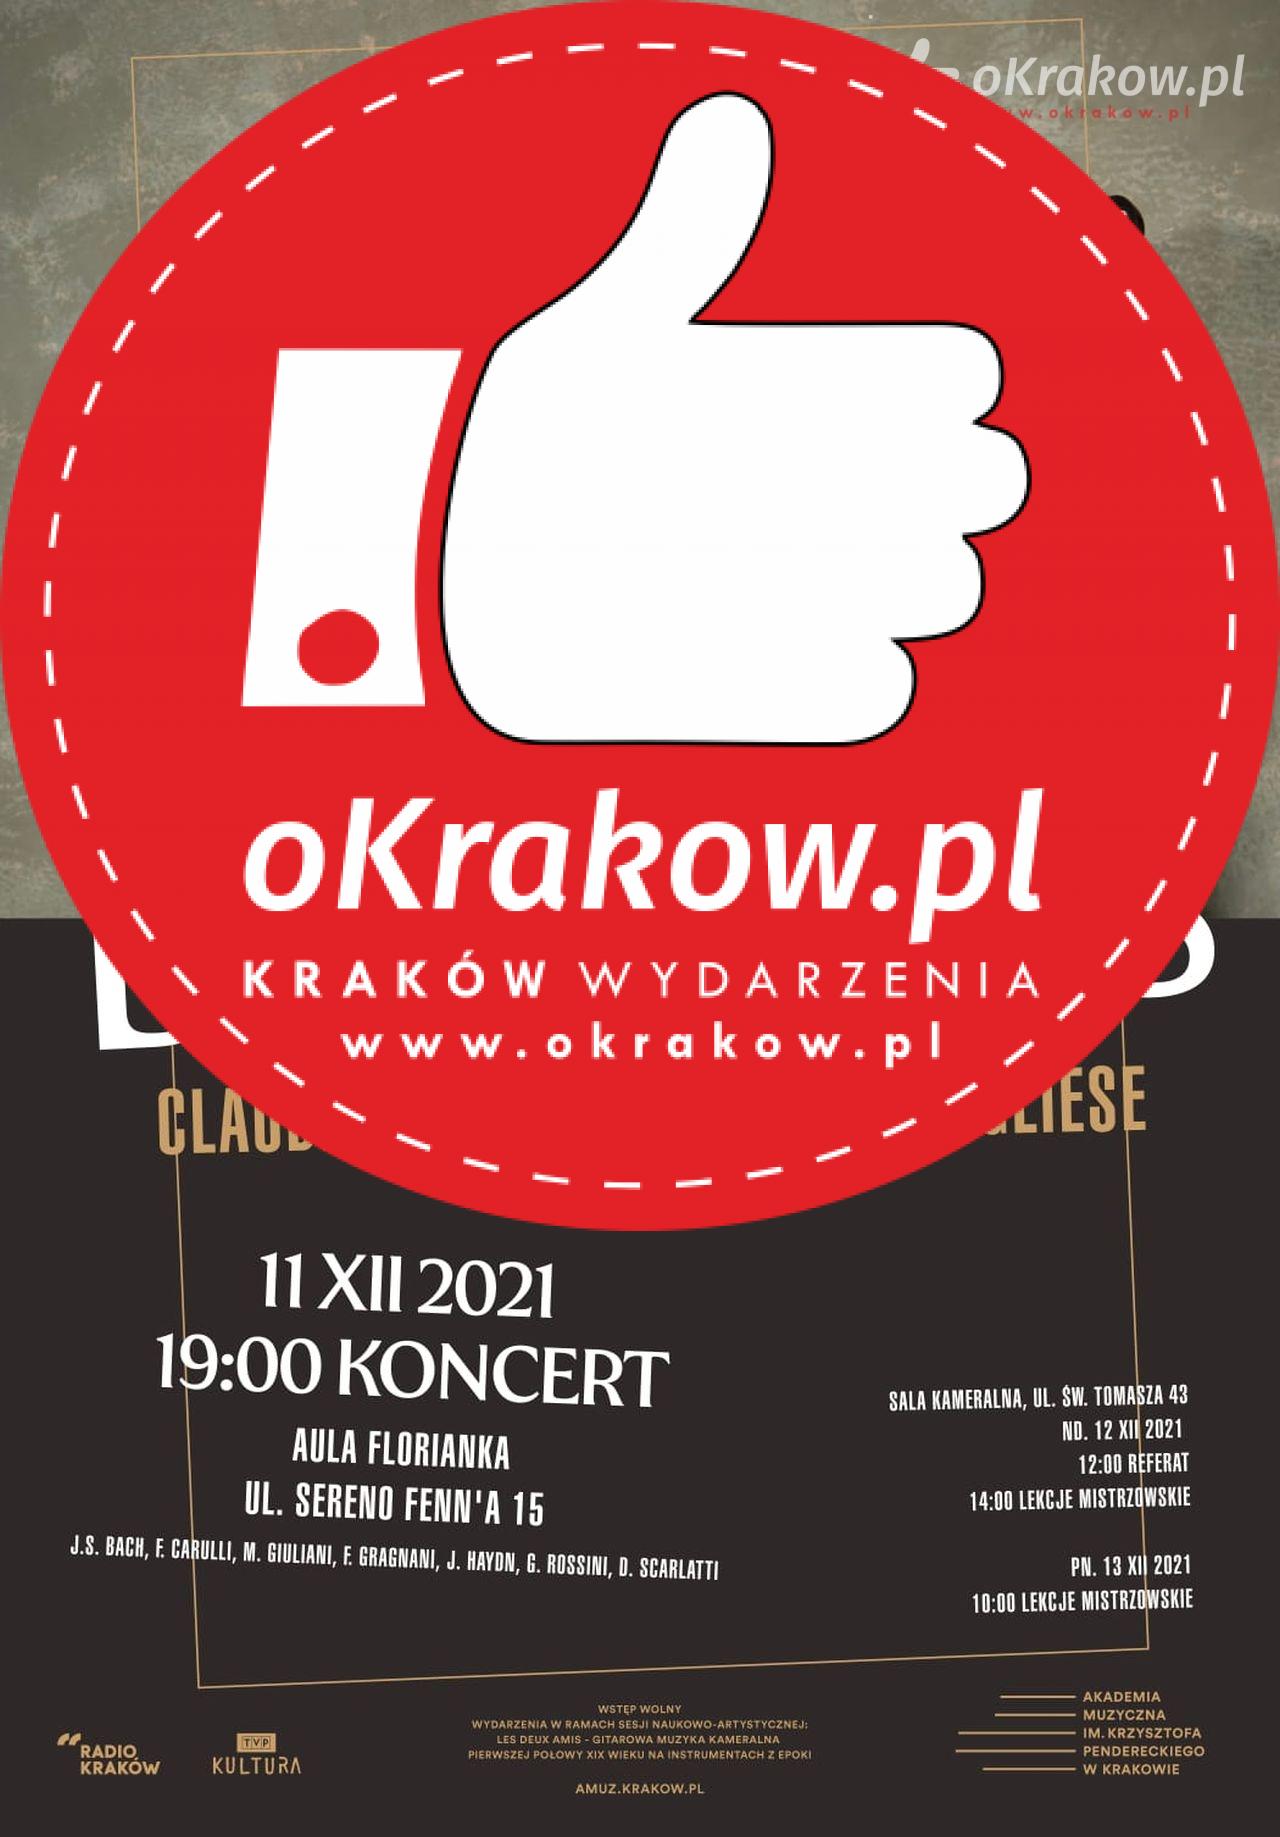 maccari pugliese plakat - Akademia Muzyczna im. Krzysztofa Pendereckiego w Krakowie zaprasza na koncerty 11 i 12 grudnia.